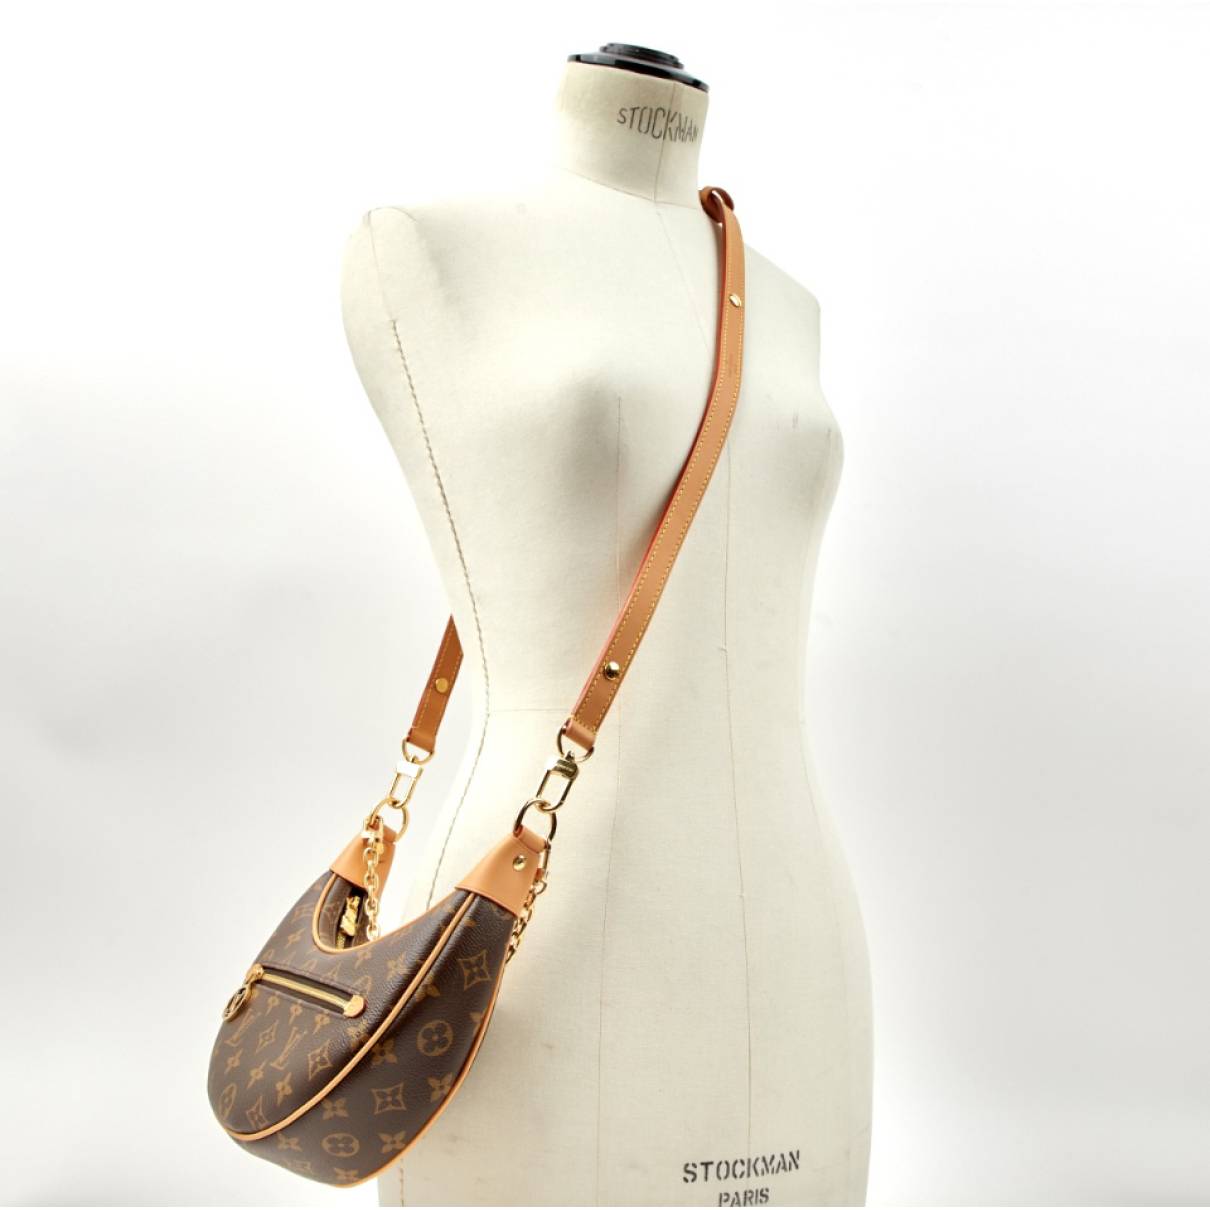 Louis Vuitton Loop Handbag Monogram Canvas Brown 2288861